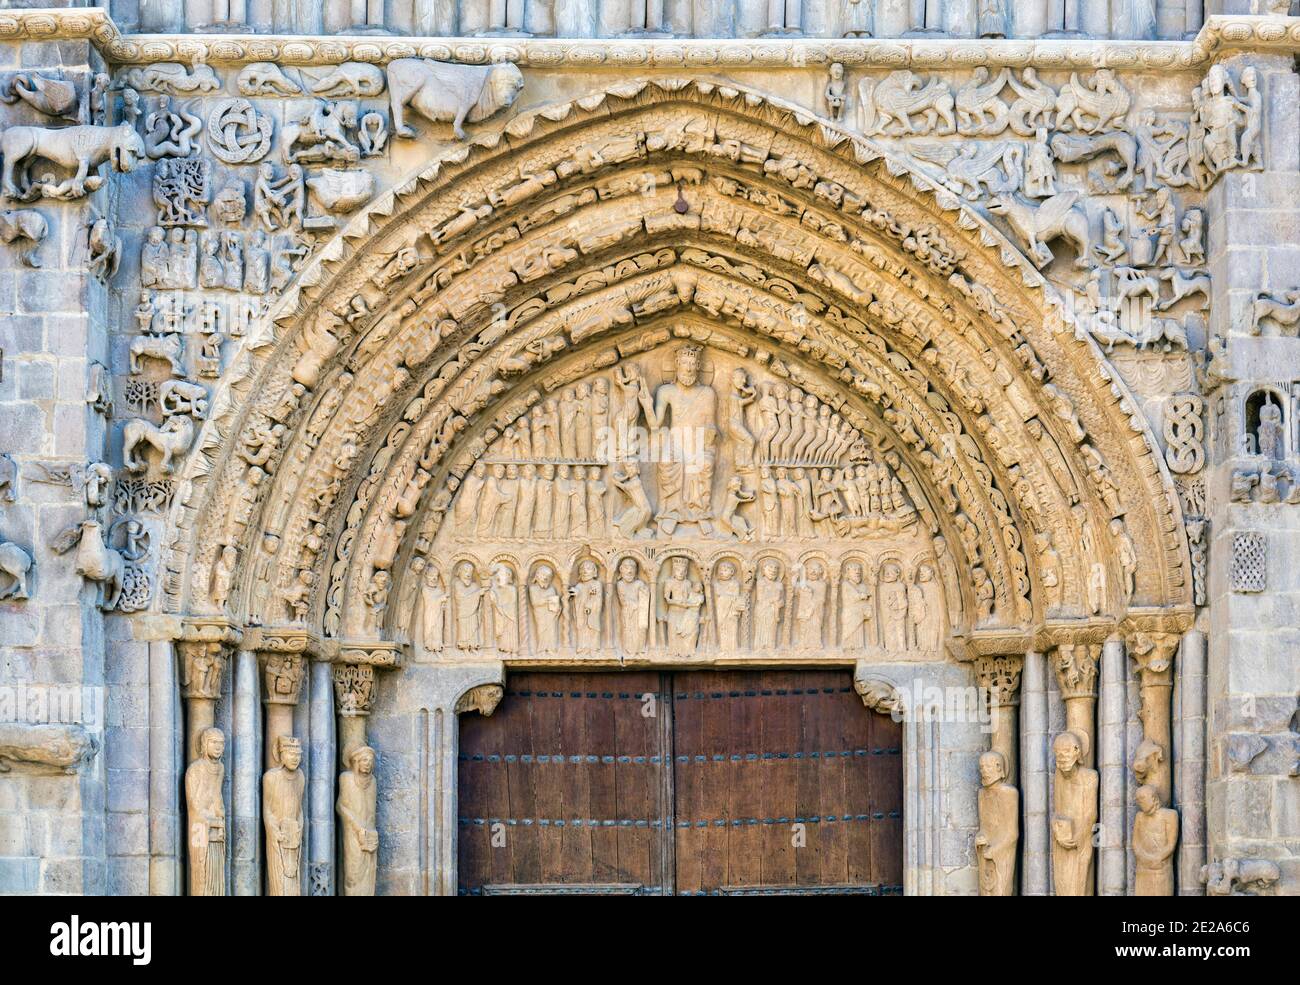 Romanischer Portikus der romanisch-gotischen Kirche Santa María la Real, Sangüesa - Zangoza im Baskischen - Navarra, Spanien. Der Portikus ist unter den Stockfoto